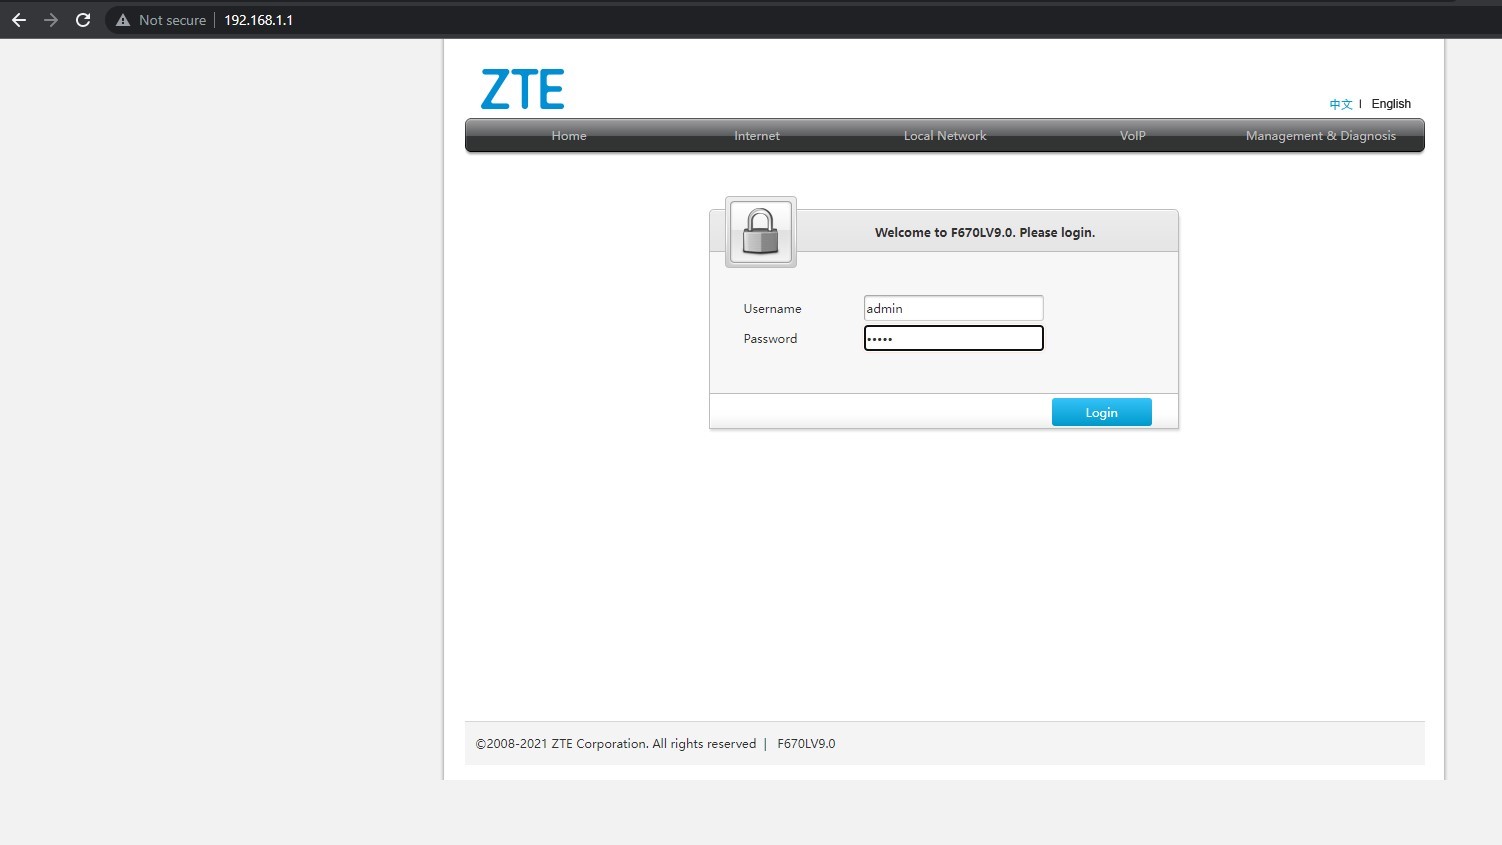 A screenshot of the login screen of a ZTE Wi-Fi router.